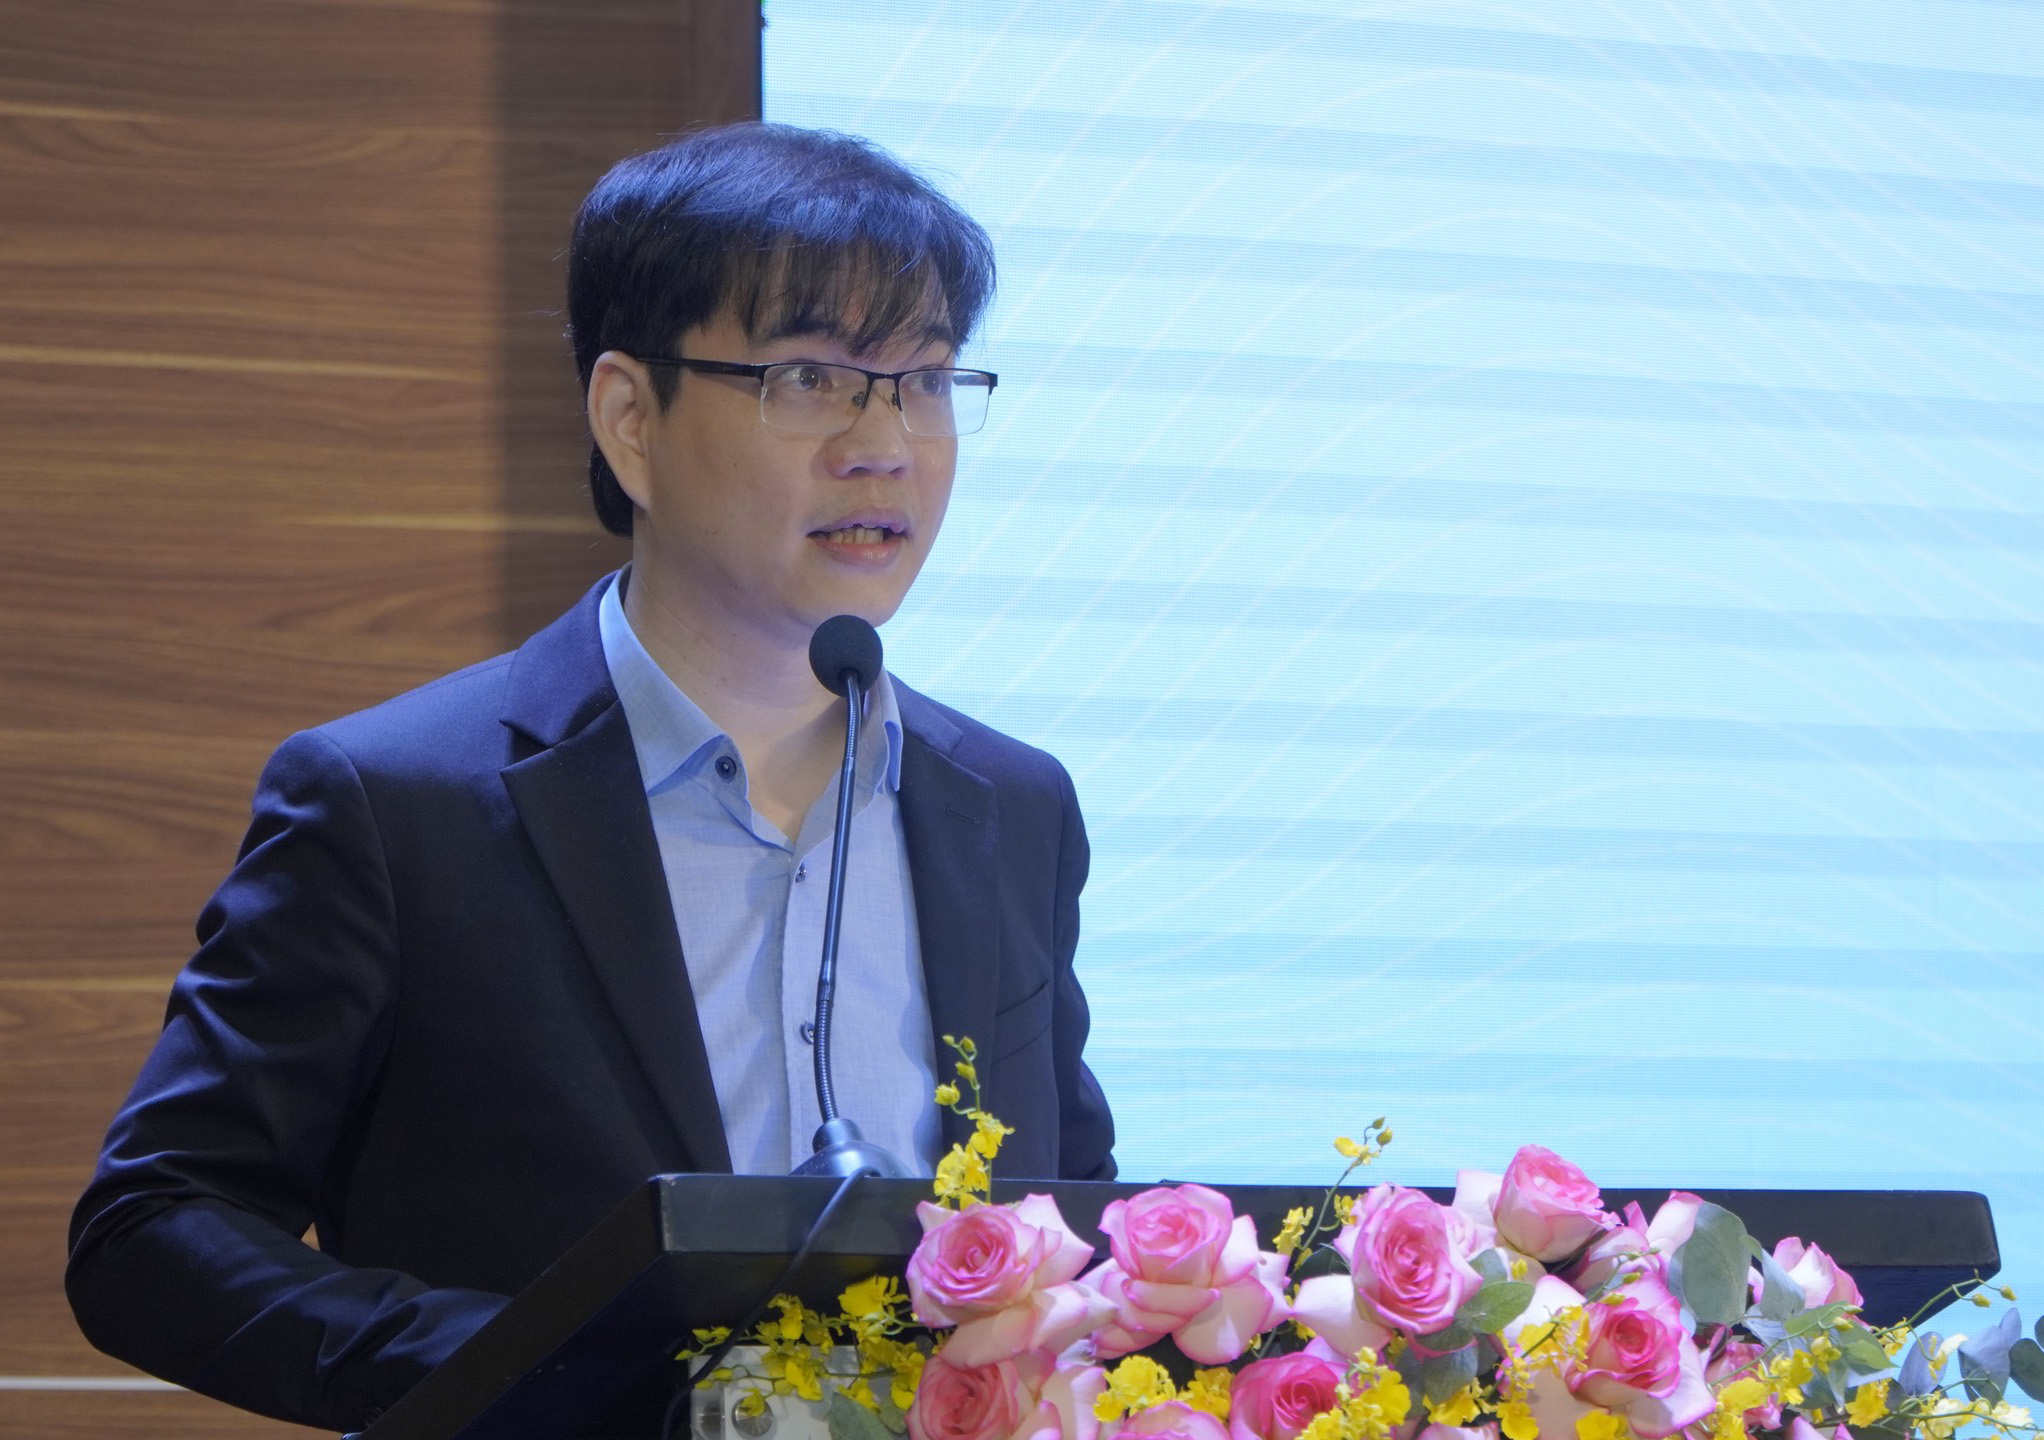 TS. Ngô Minh Đức - Hiệu trưởng Trường Đại học Quốc tế Miền Đông phát biểu tại chương trình.